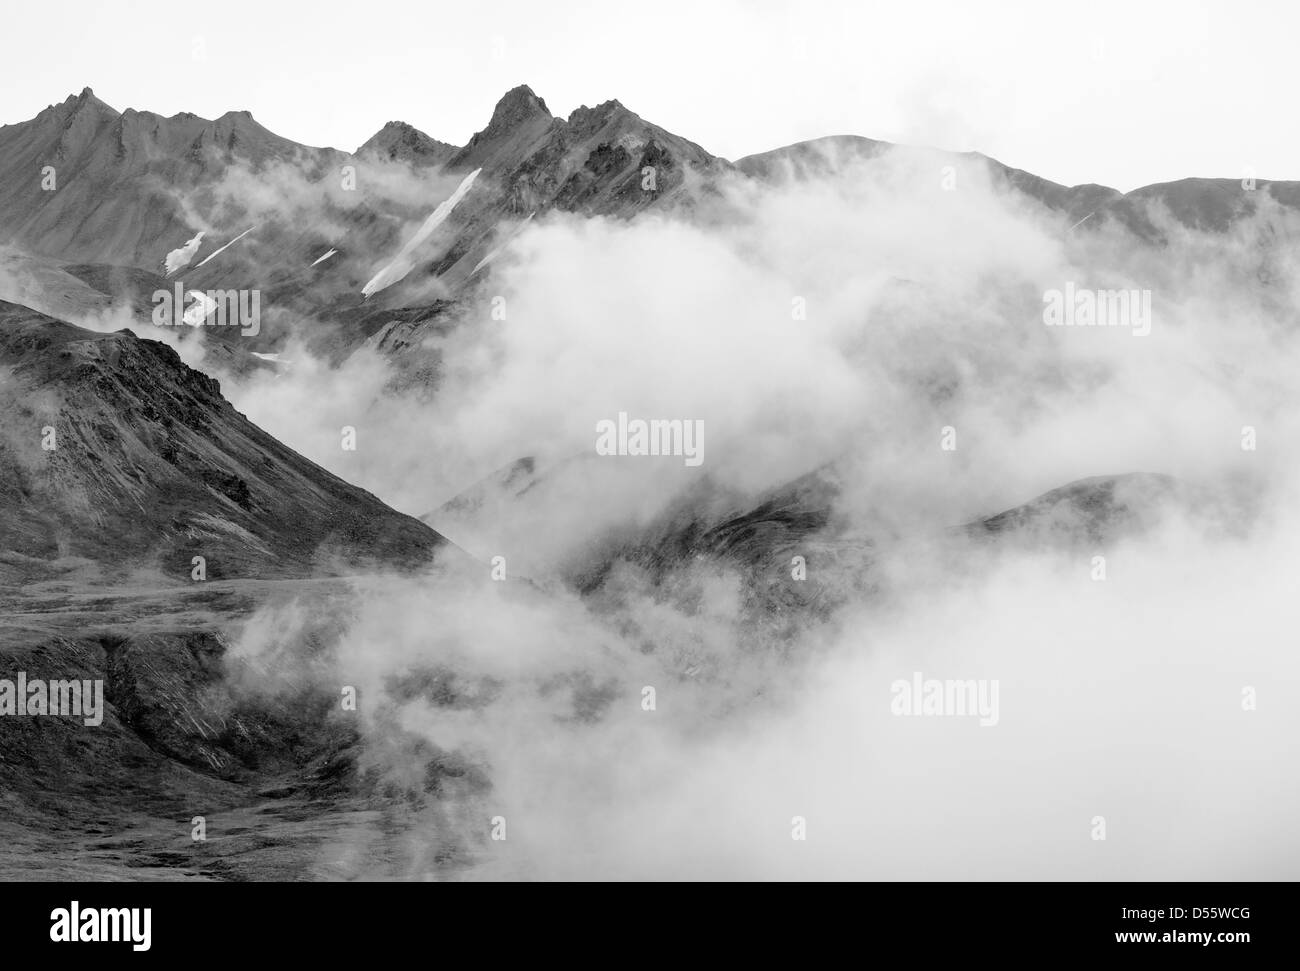 Visualizzazione bianco e nero di nuvole basse, la foschia e la nebbia oscurano parzialmente l'Alaska Range, Parco Nazionale di Denali, Alaska, STATI UNITI D'AMERICA Foto Stock